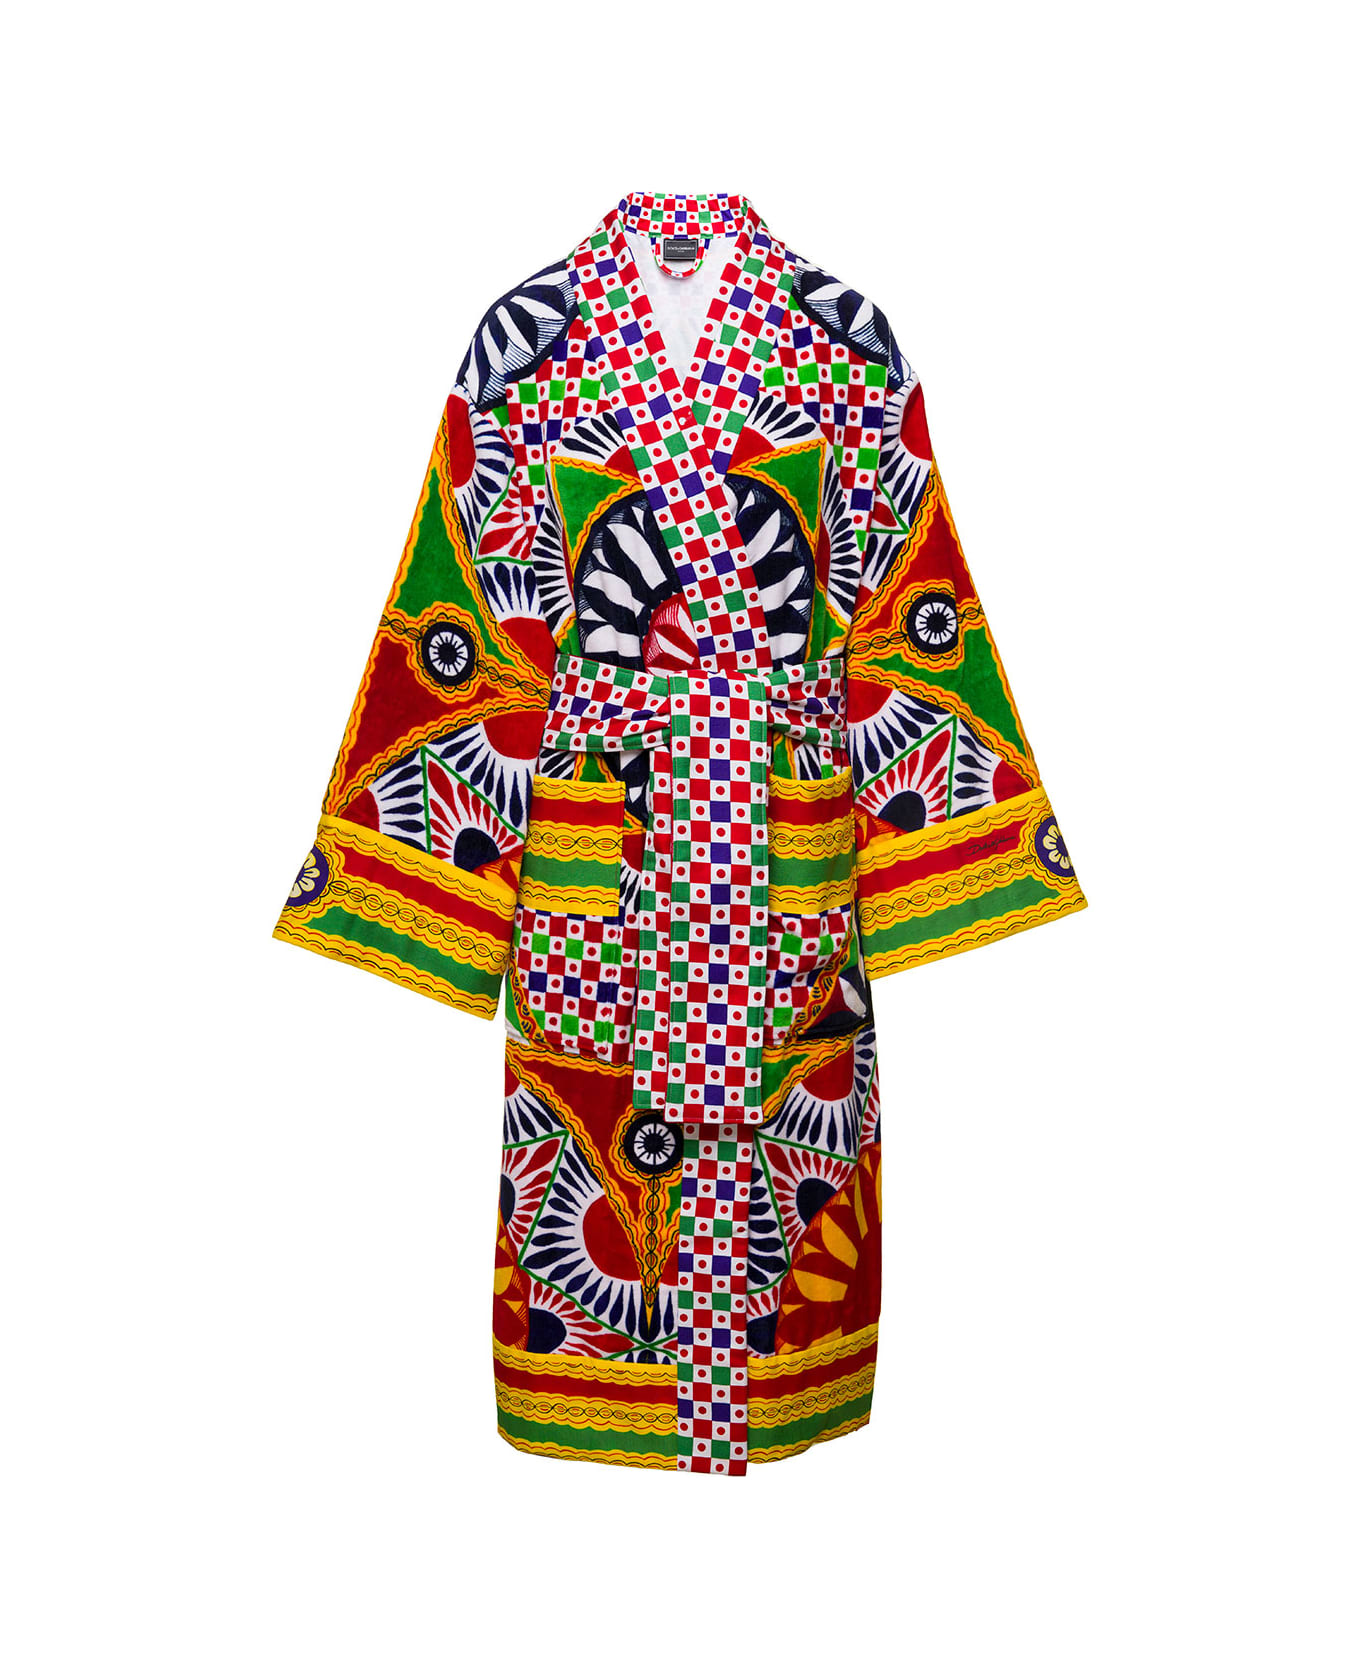 Dolce & Gabbana Multicolor Kimono Bathrobe With All-over Carretto Siciliano Print In Cotton Dolce & Gabbana - Multicolor 水着